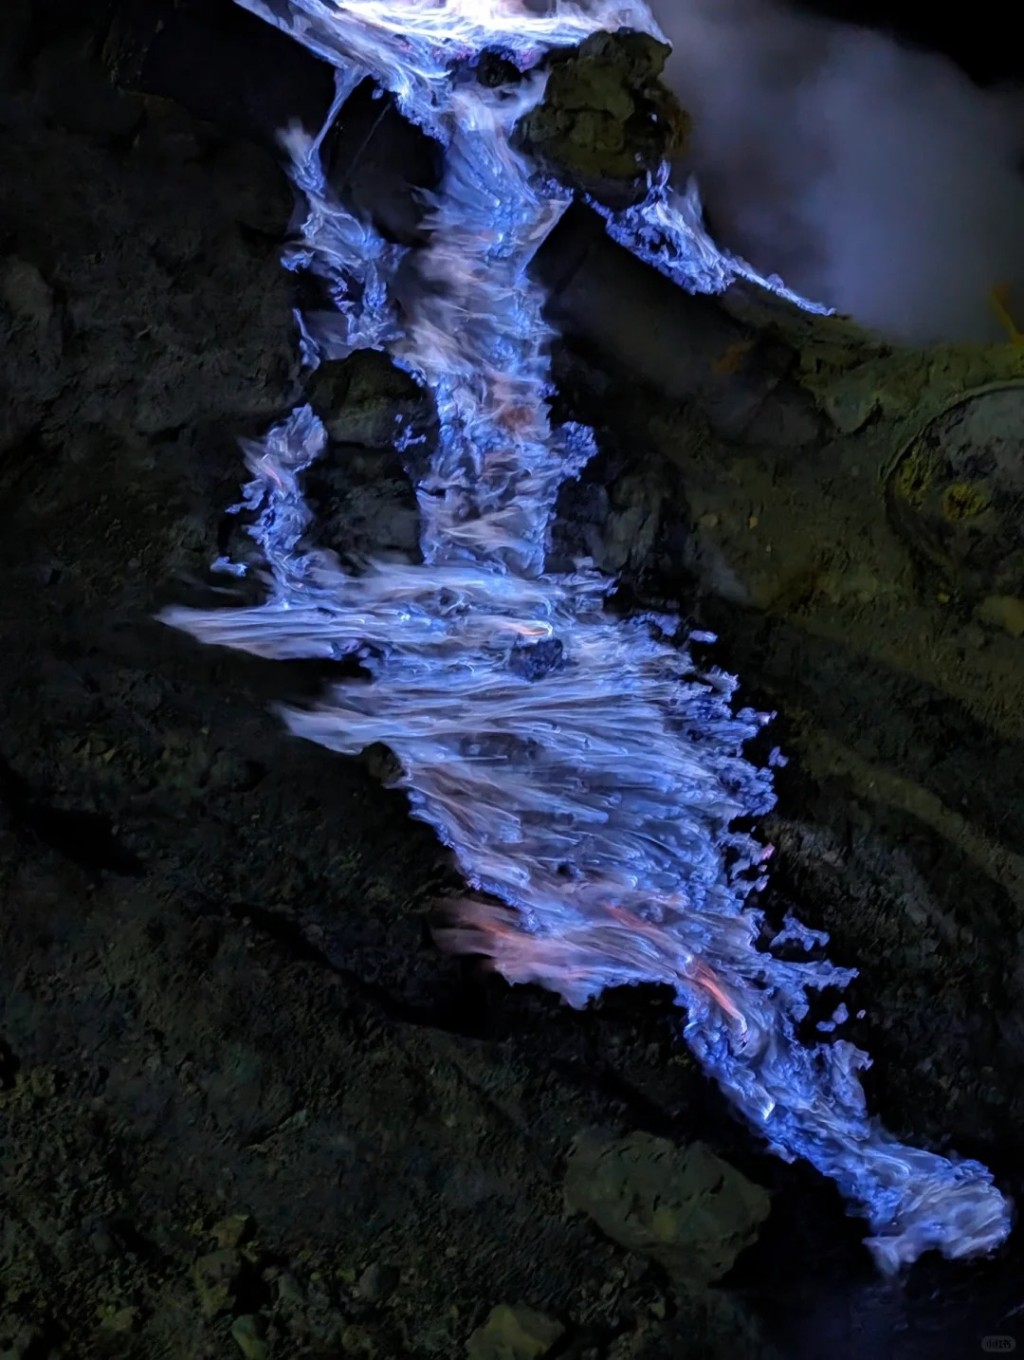 到印尼「伊真火山」有「全世界唯二能看見藍色火焰的地方」。小紅書